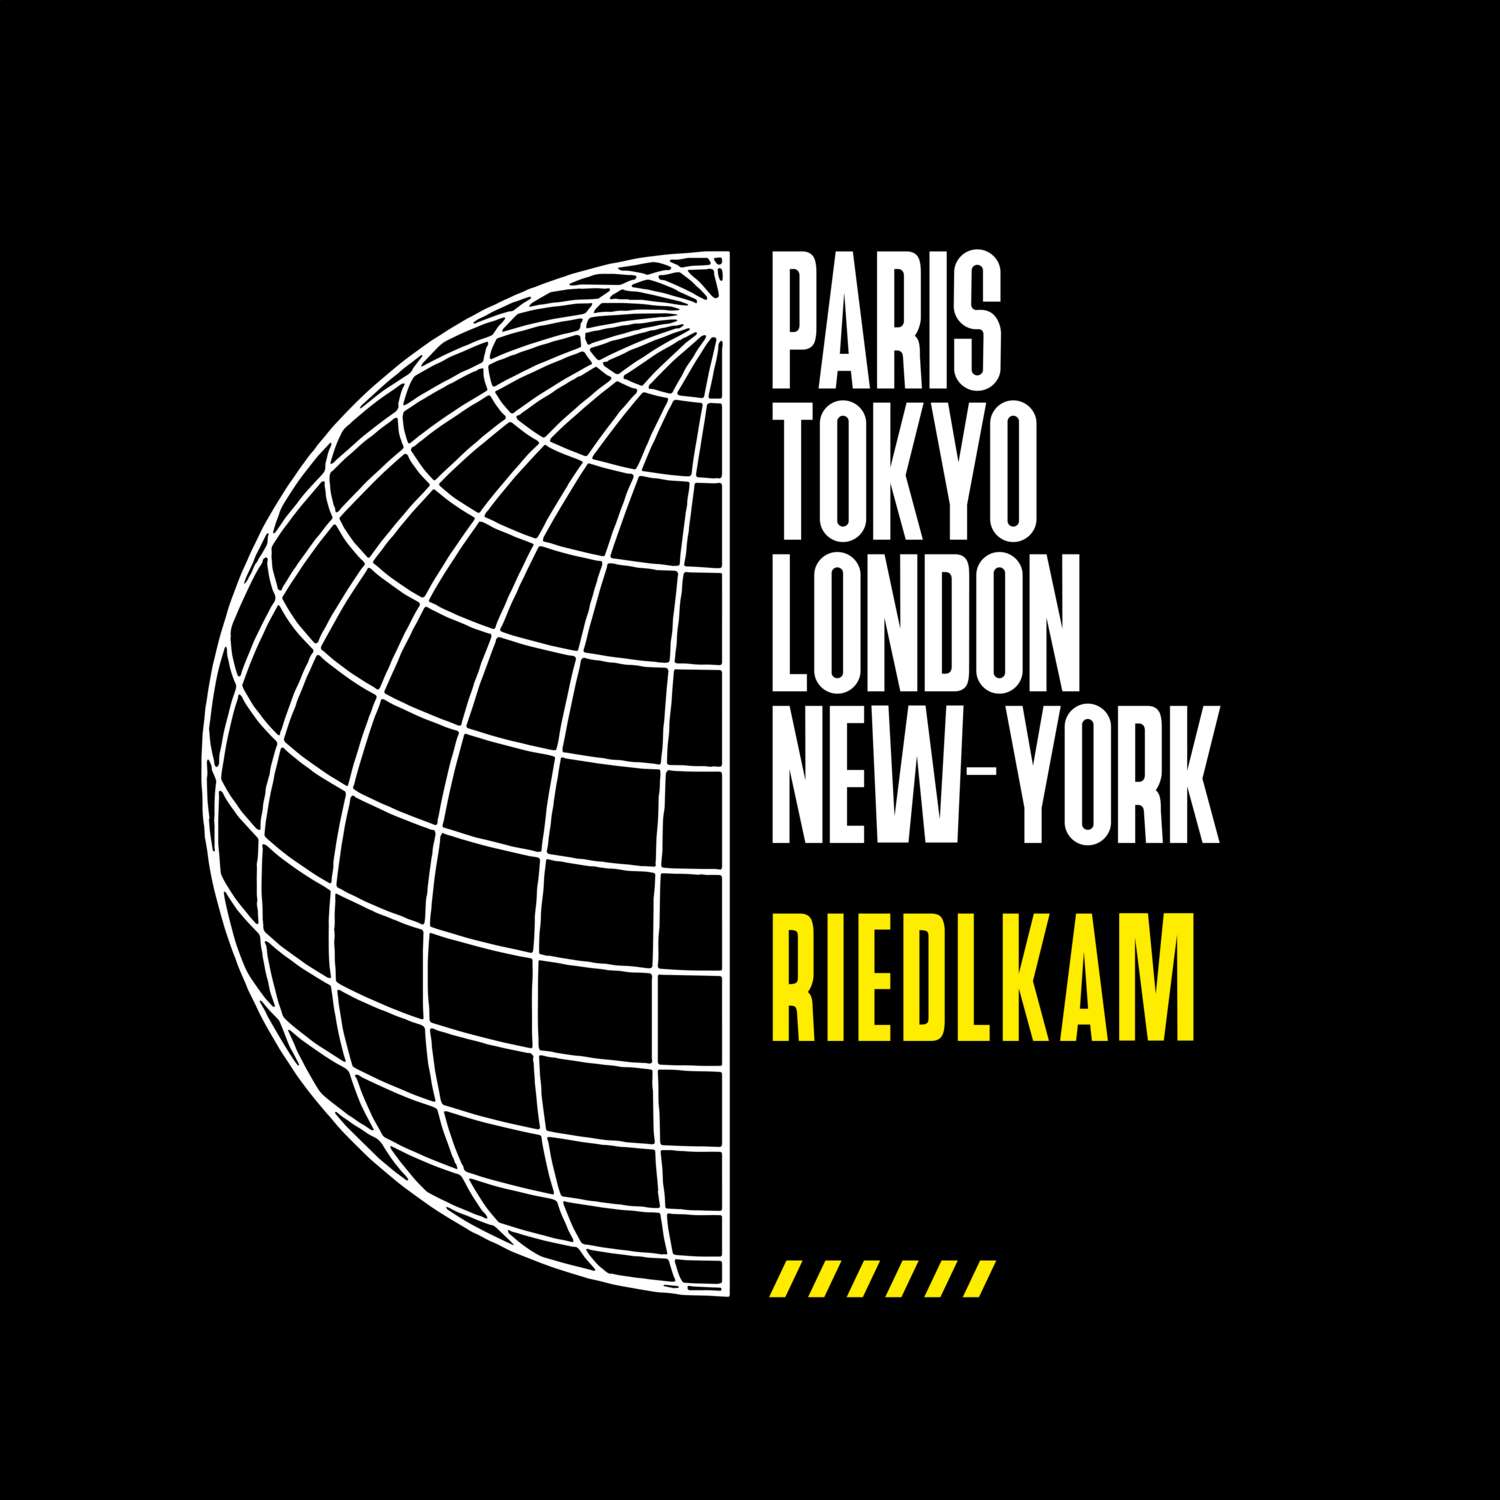 Riedlkam T-Shirt »Paris Tokyo London«